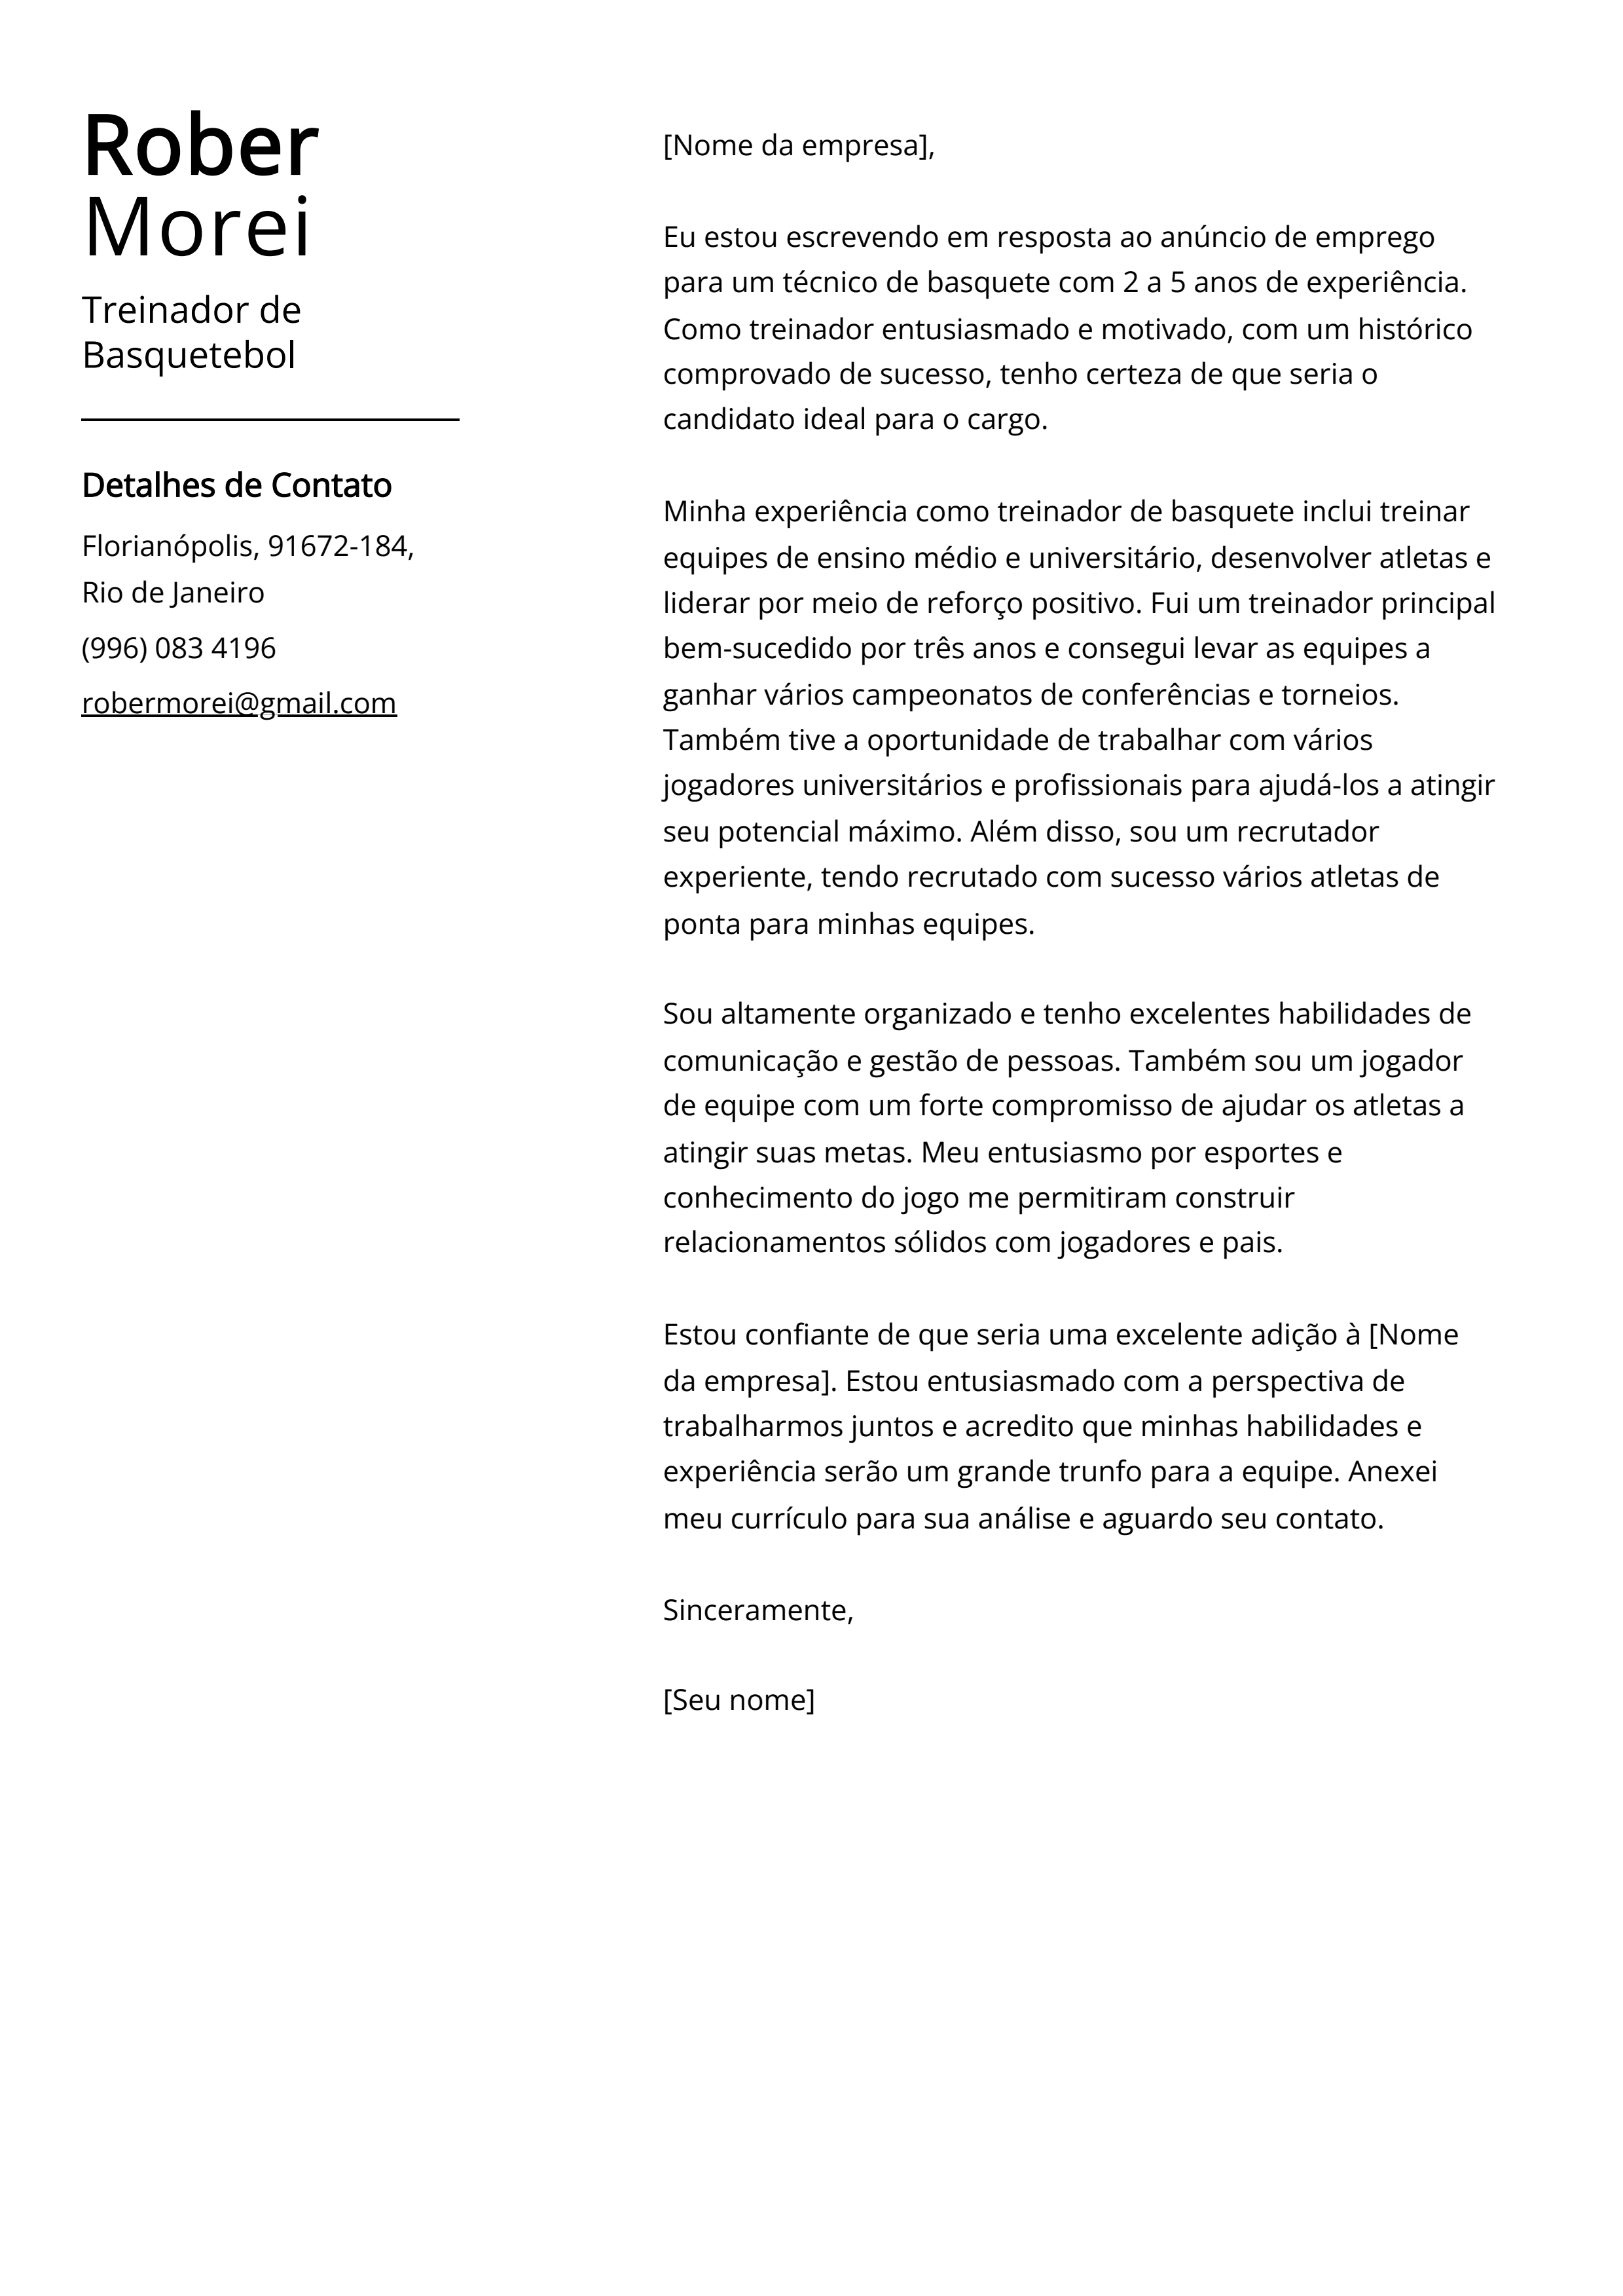 Exemplo de carta de apresentação do Treinador de Basquetebol